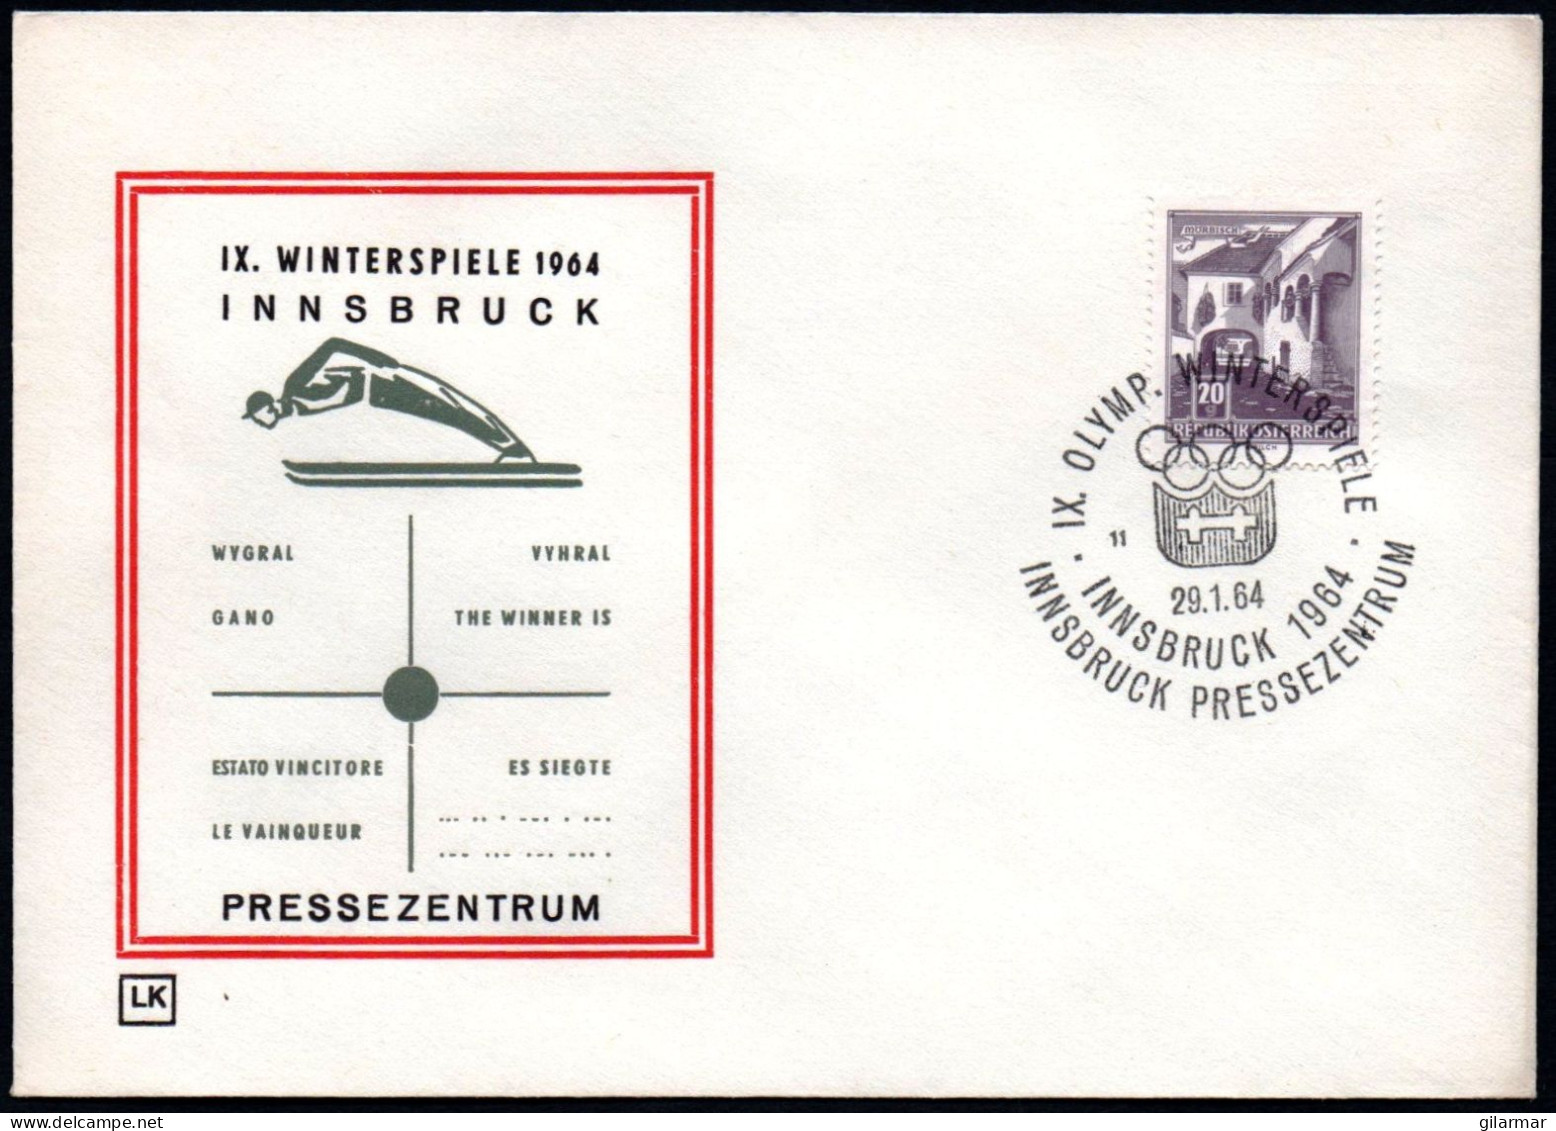 AUSTRIA INNSBRUCK 1964 - IX OLYMPIC WINTER GAMES - INNSBRUCK '64 - PRESS CENTRE - CANCEL # 11 - G - Winter 1964: Innsbruck